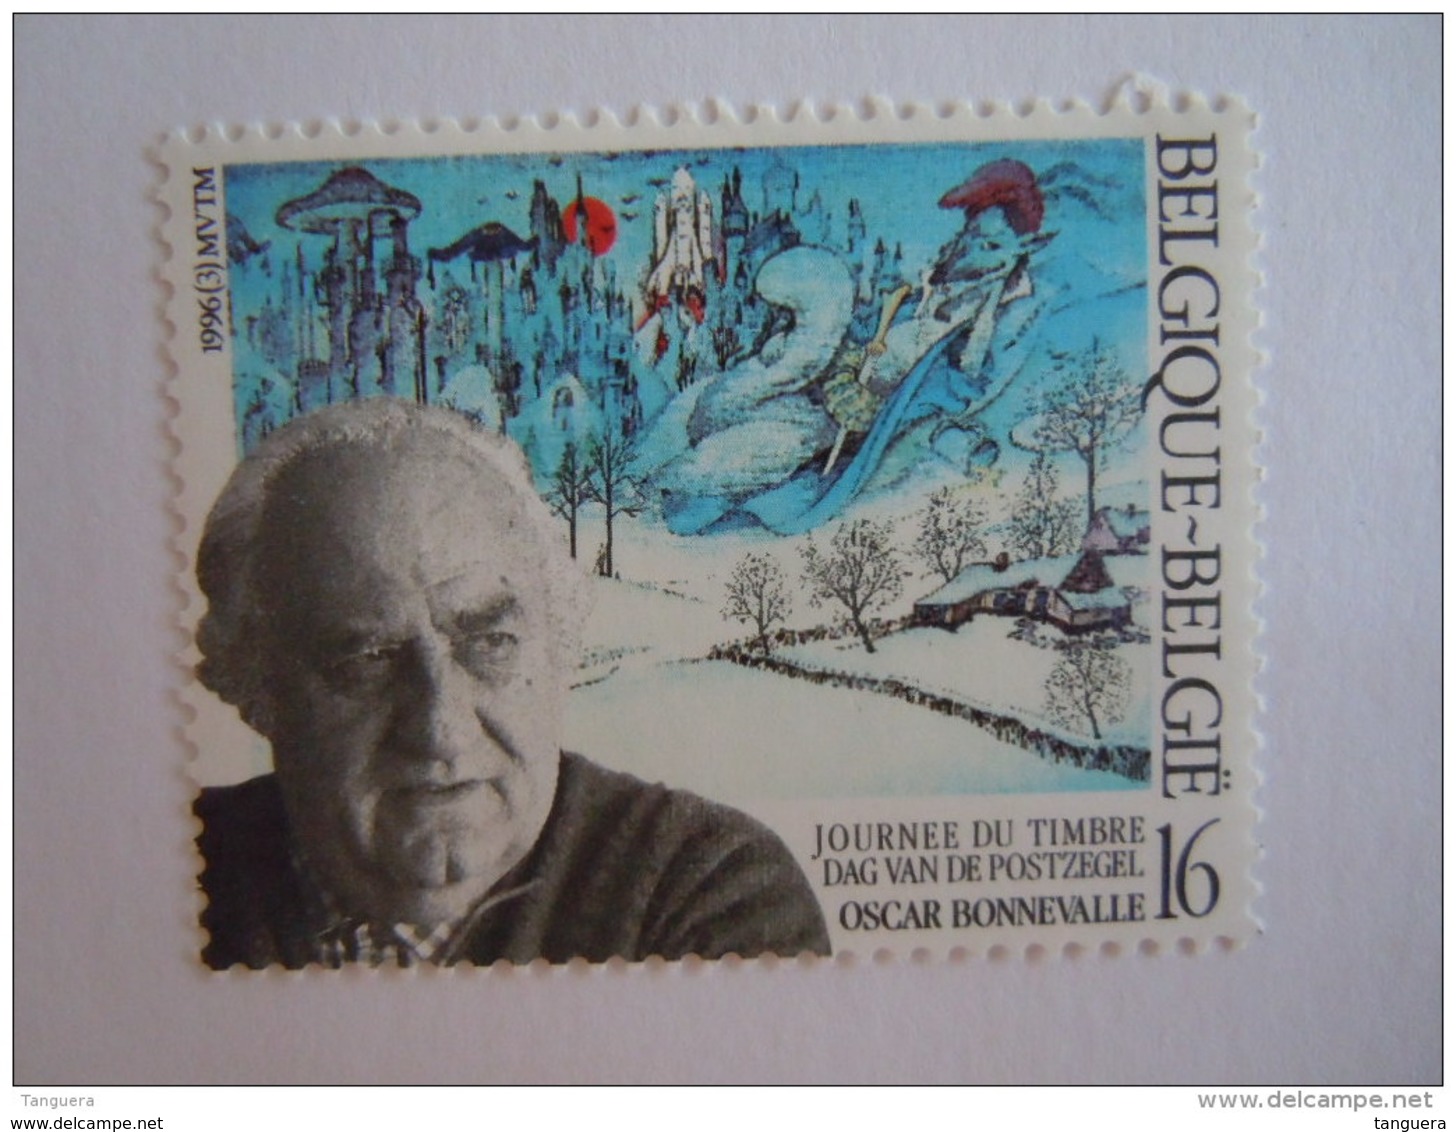 België Belgique 1996 Oscar Bonnevalle Dag Van De Postzegel Journée Du Timbre Cob 2629 MNH ** - Unused Stamps